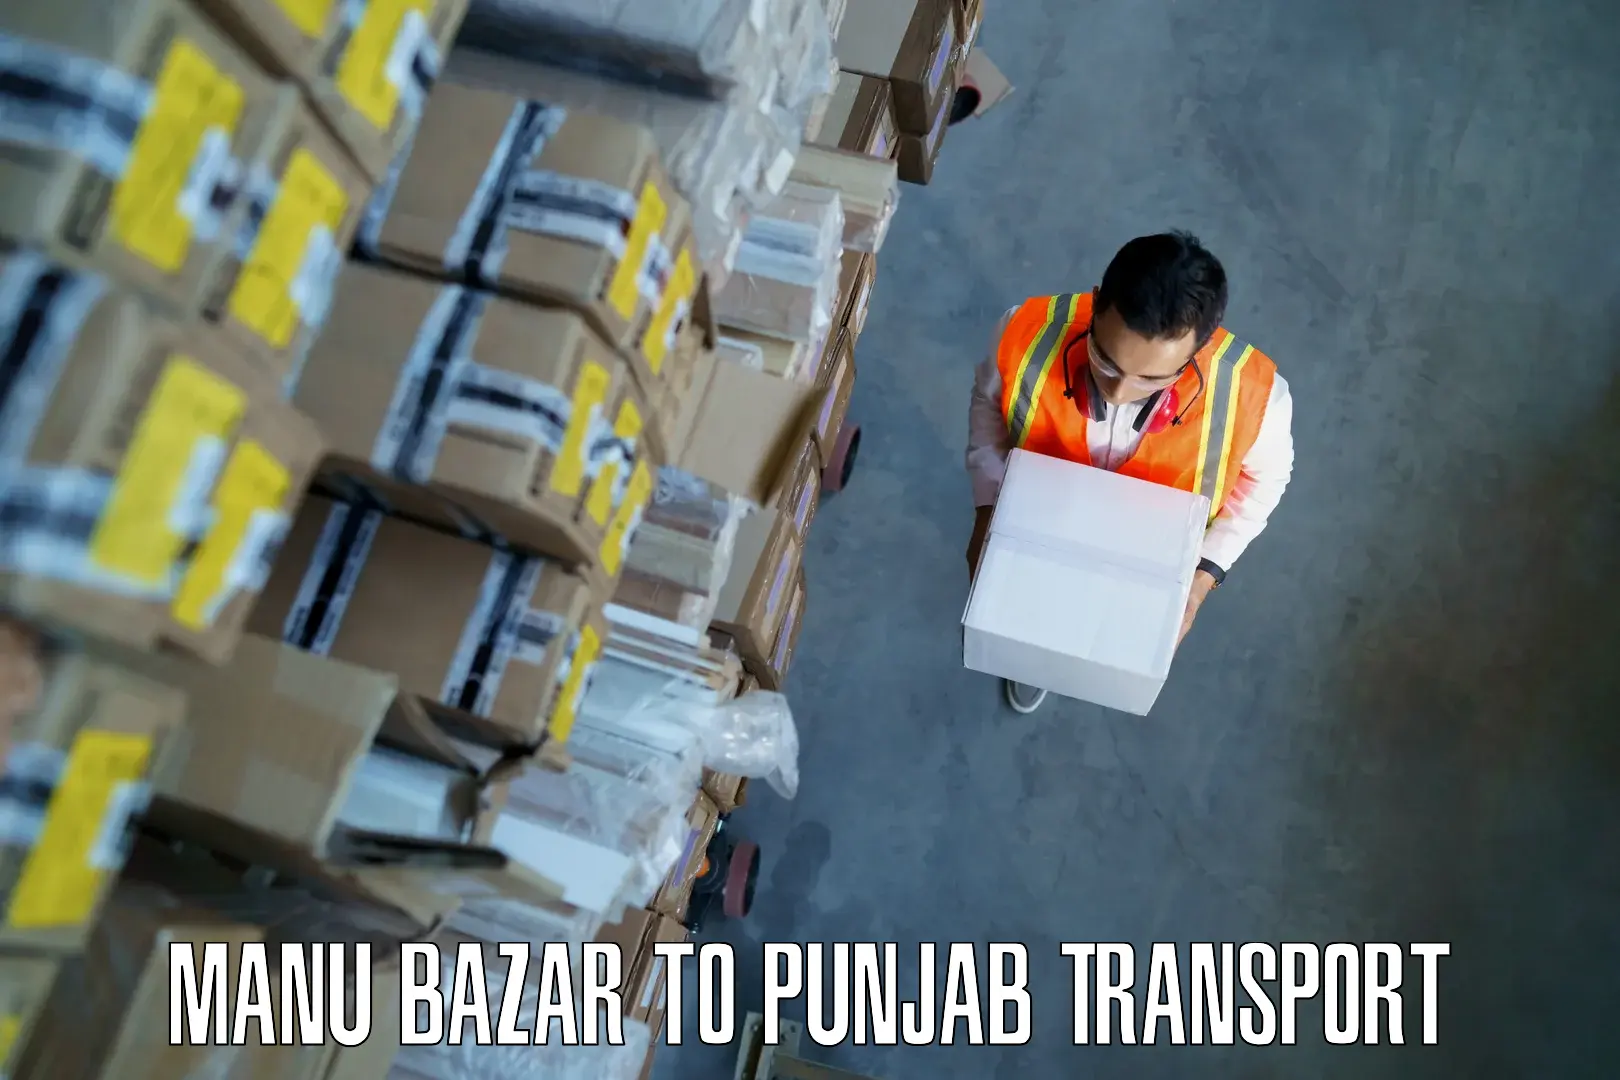 Daily parcel service transport in Manu Bazar to NIT Jallandhar